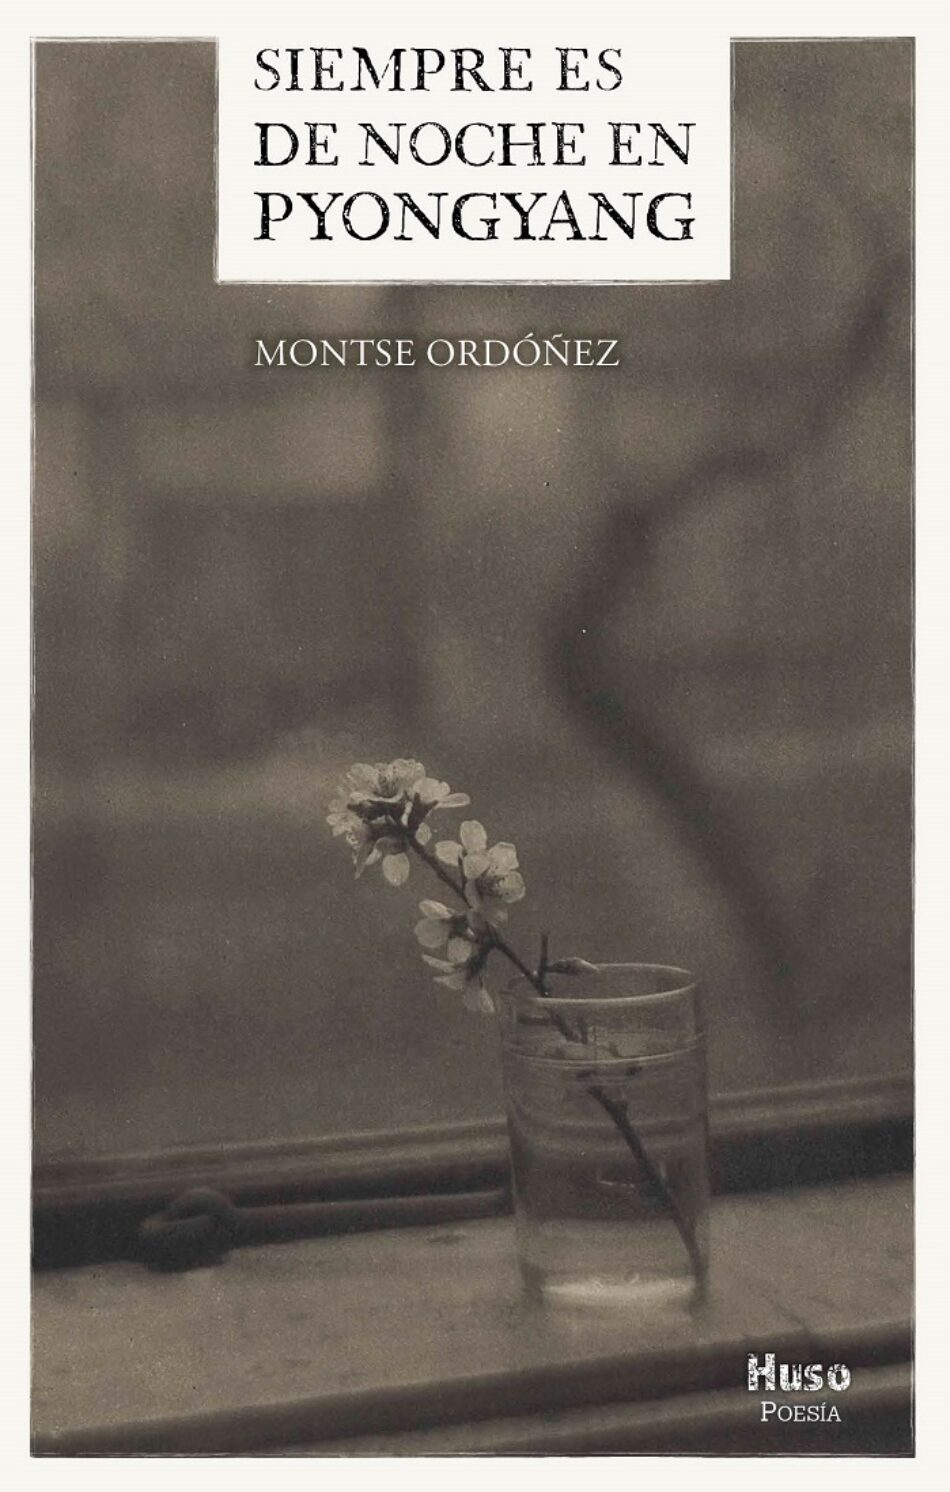 Entrevista con la poeta Montse Ordoñez:  “Sería imposible imaginar a la humanidad sin poesía”